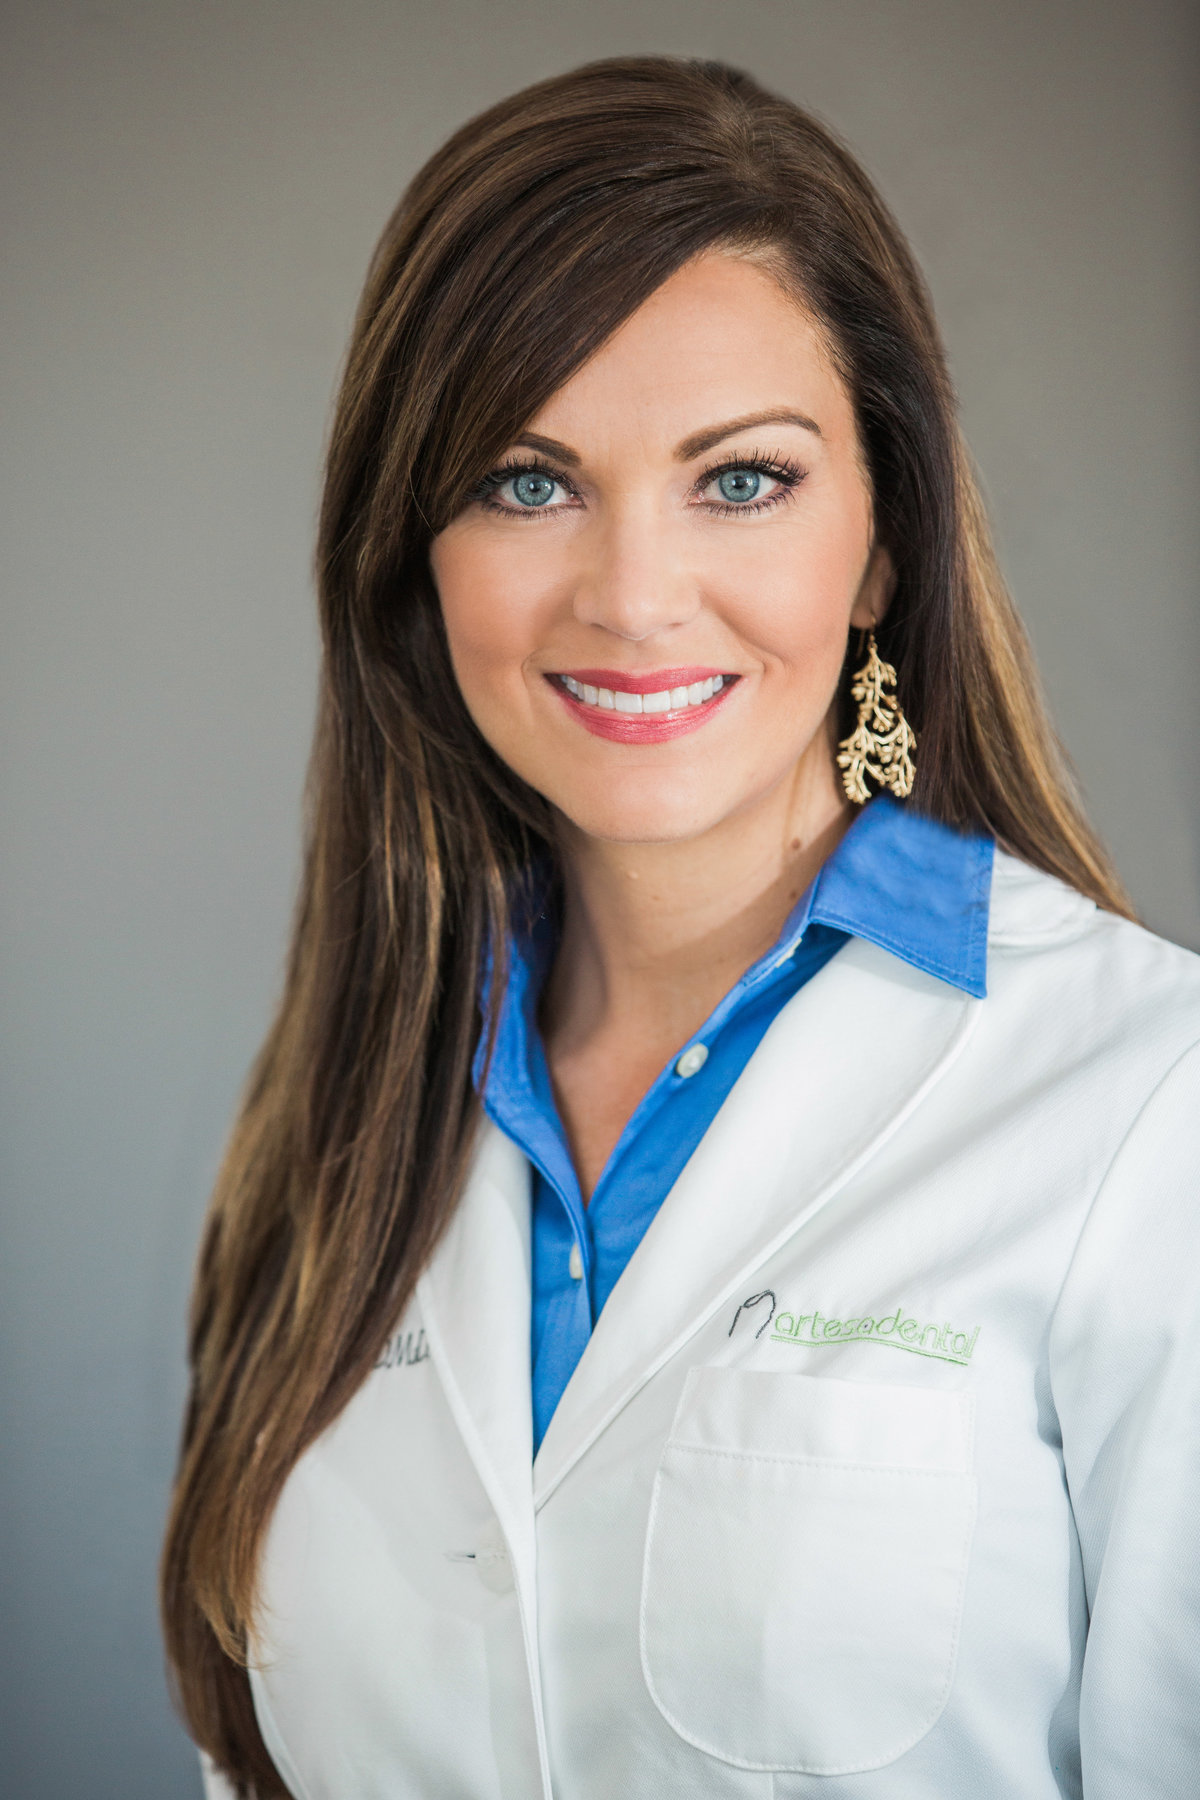 Dr. Amanda Backstrom